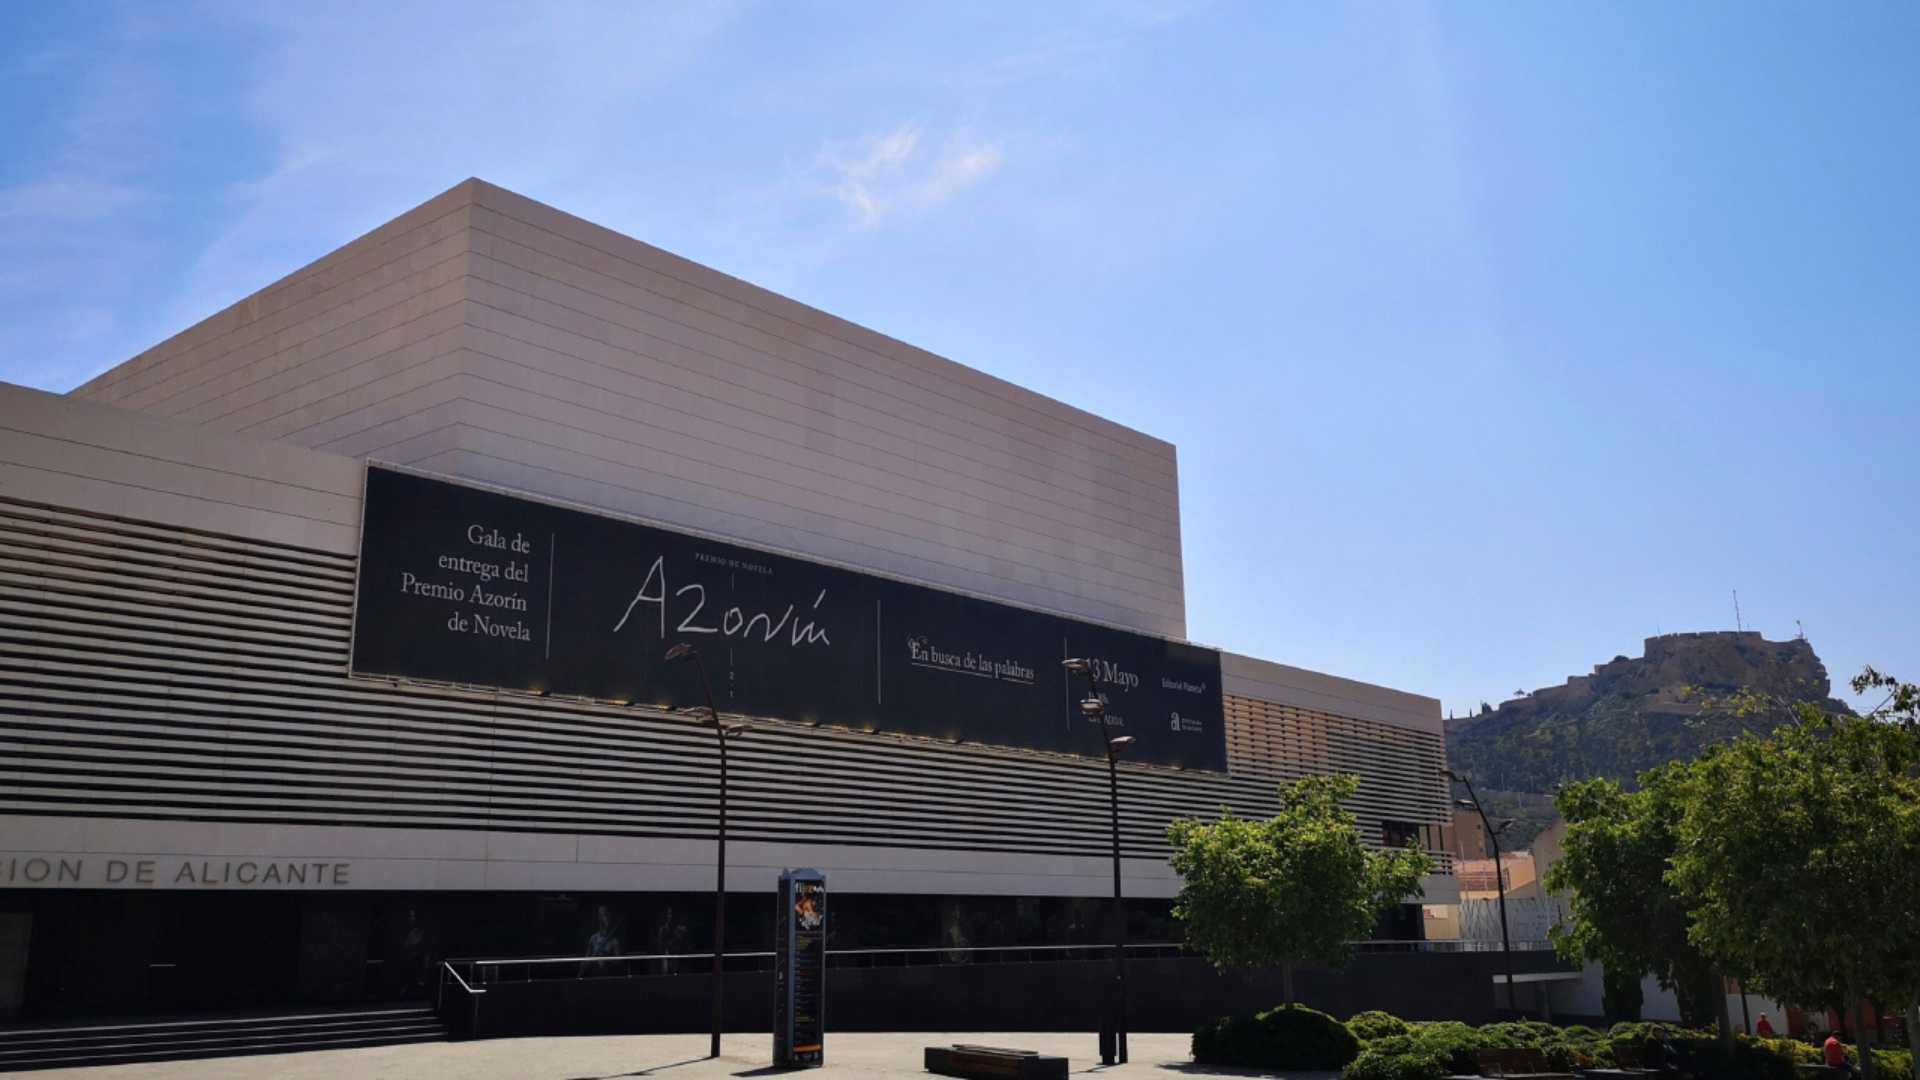 ADDA, Auditorio de la Diputación de Alicante